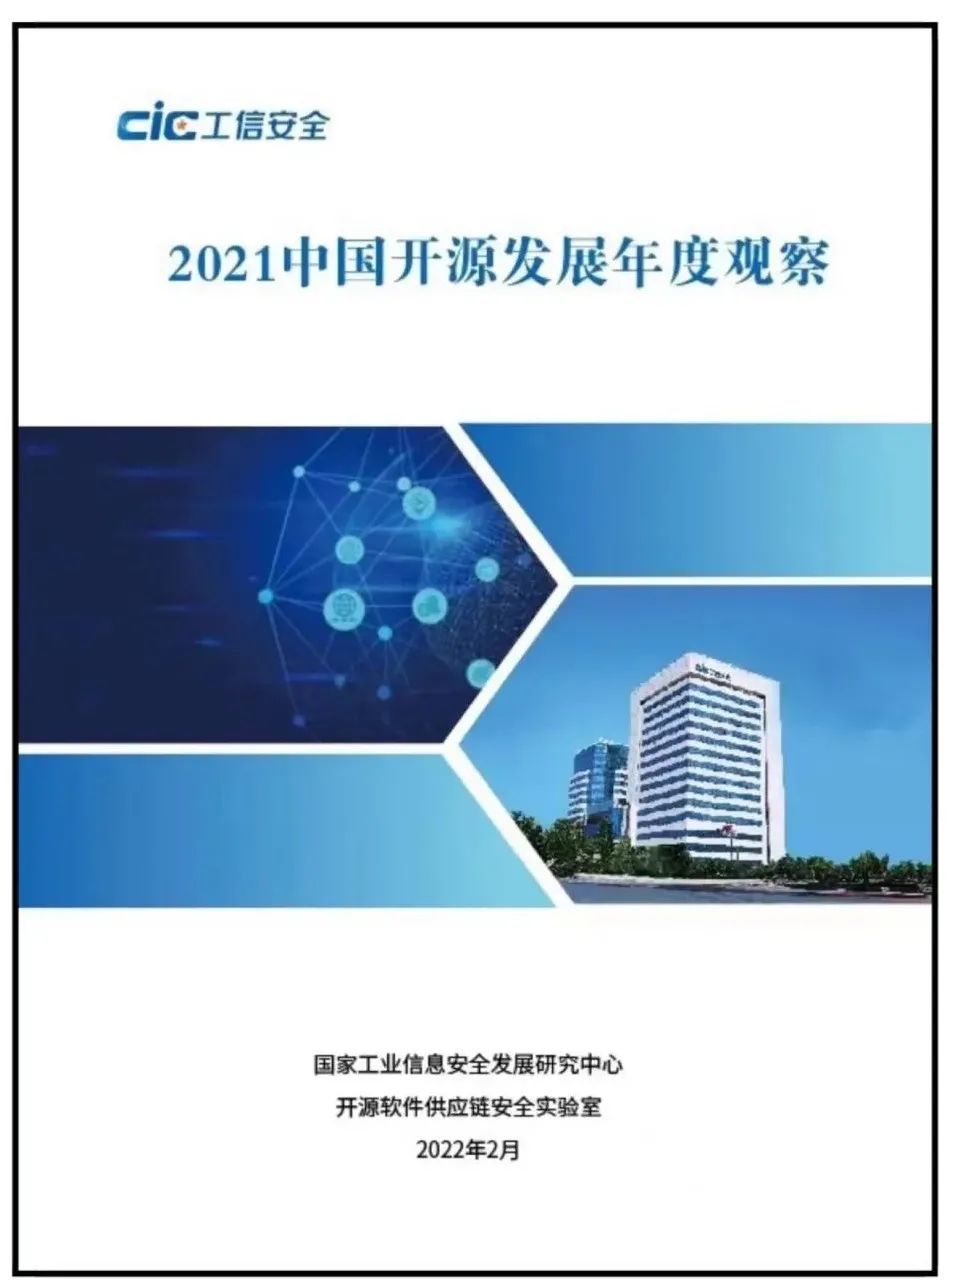 《2021中国开源发展年度观察》发布 (附下载)